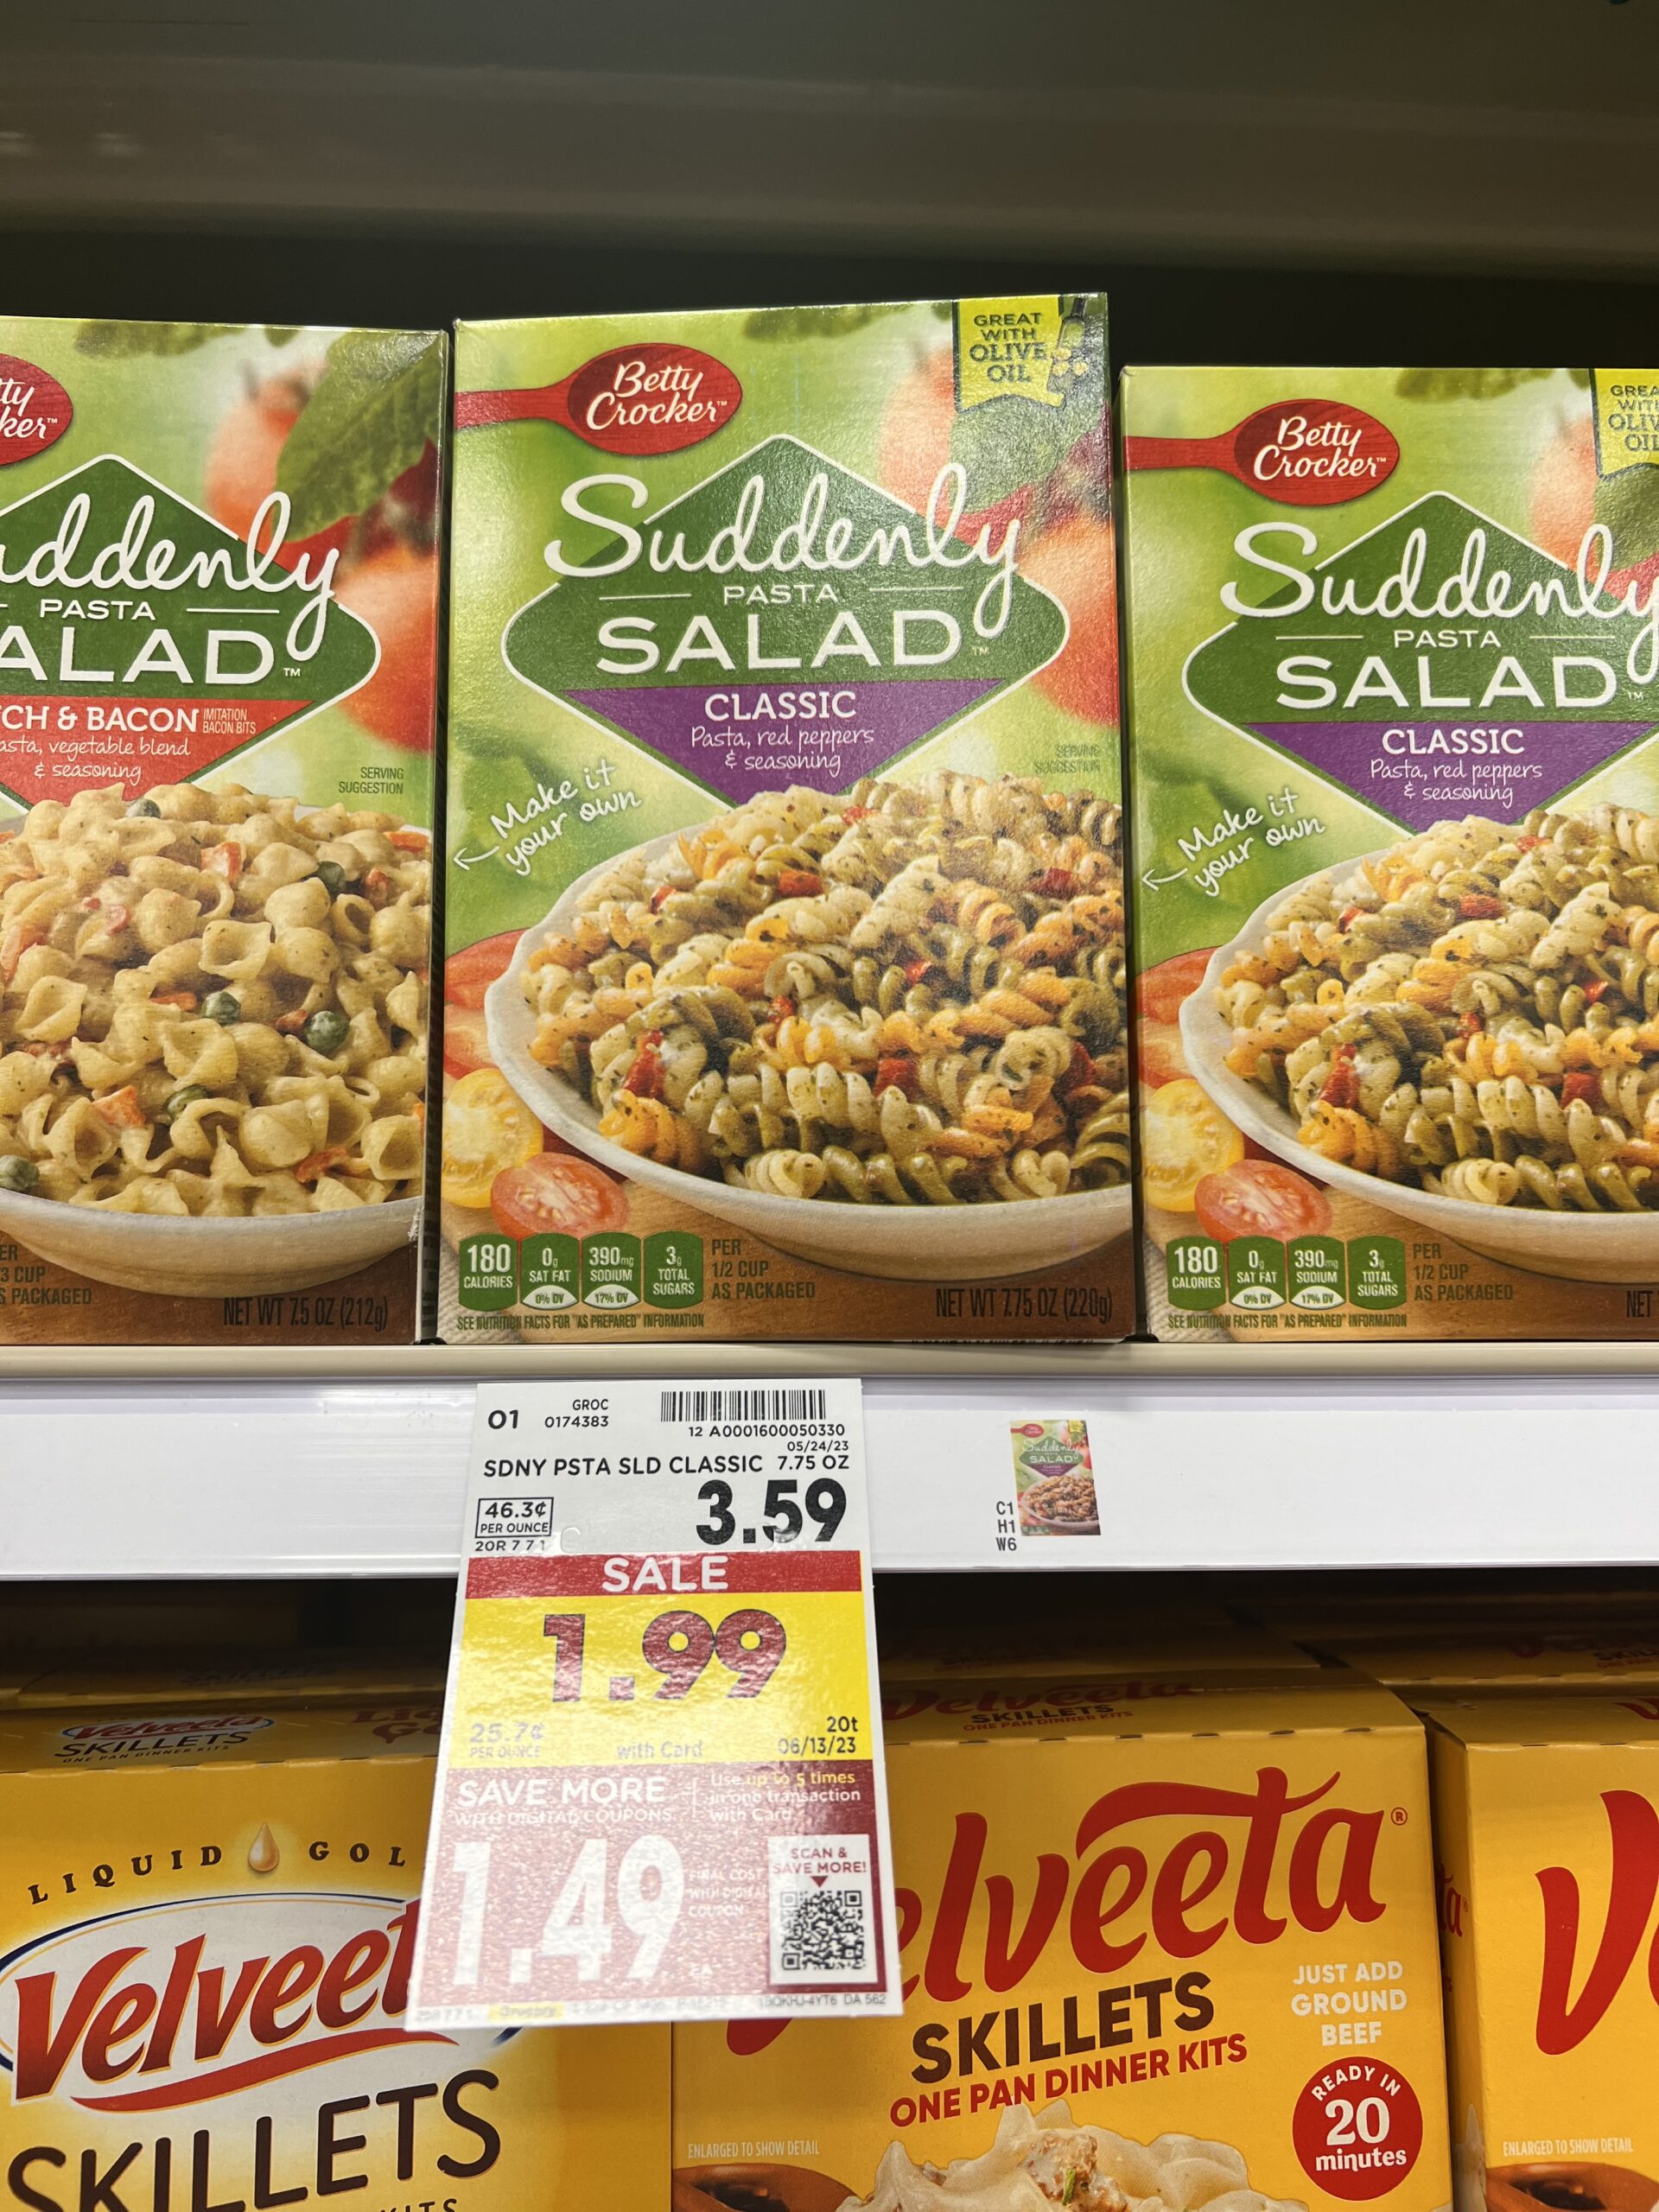 suddenly salad kroger shelf image 1